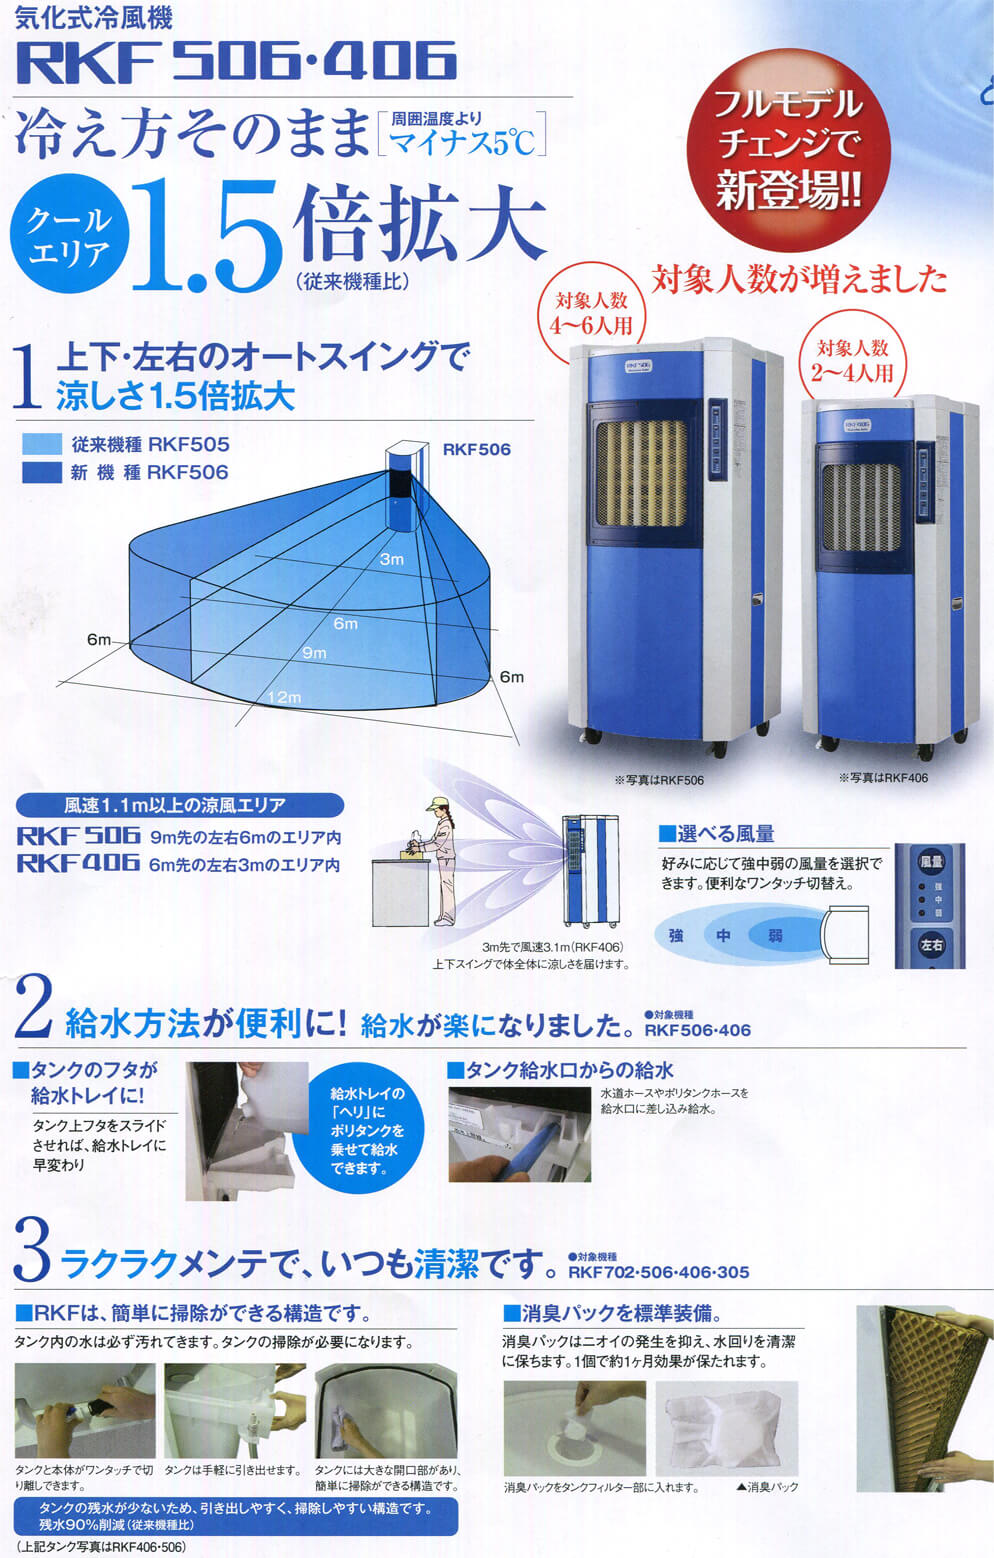 静岡製機 RKF406 気化式冷風機【数量限定☆特価】 ウエダ金物【公式サイト】